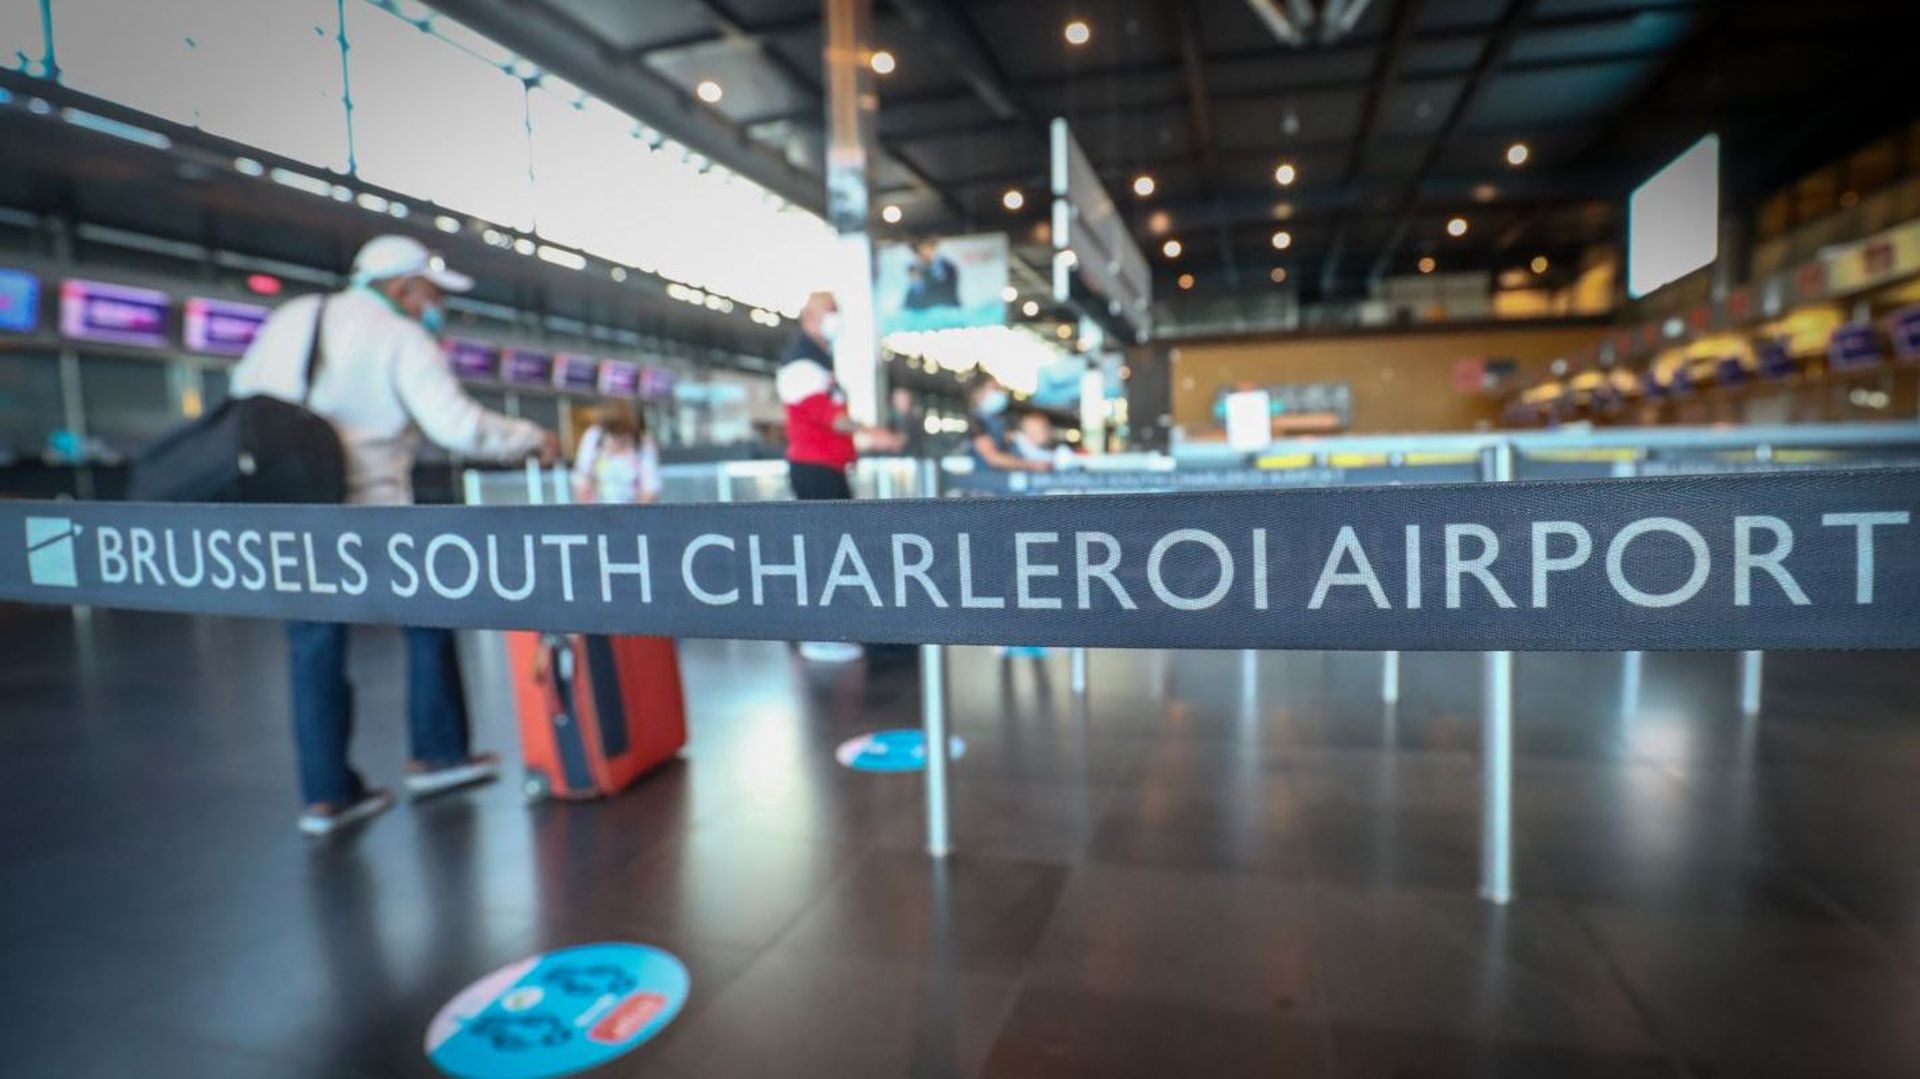 L’aéroport de Charleroi a vu ses chiffres de fréquentation chuter drastiquement